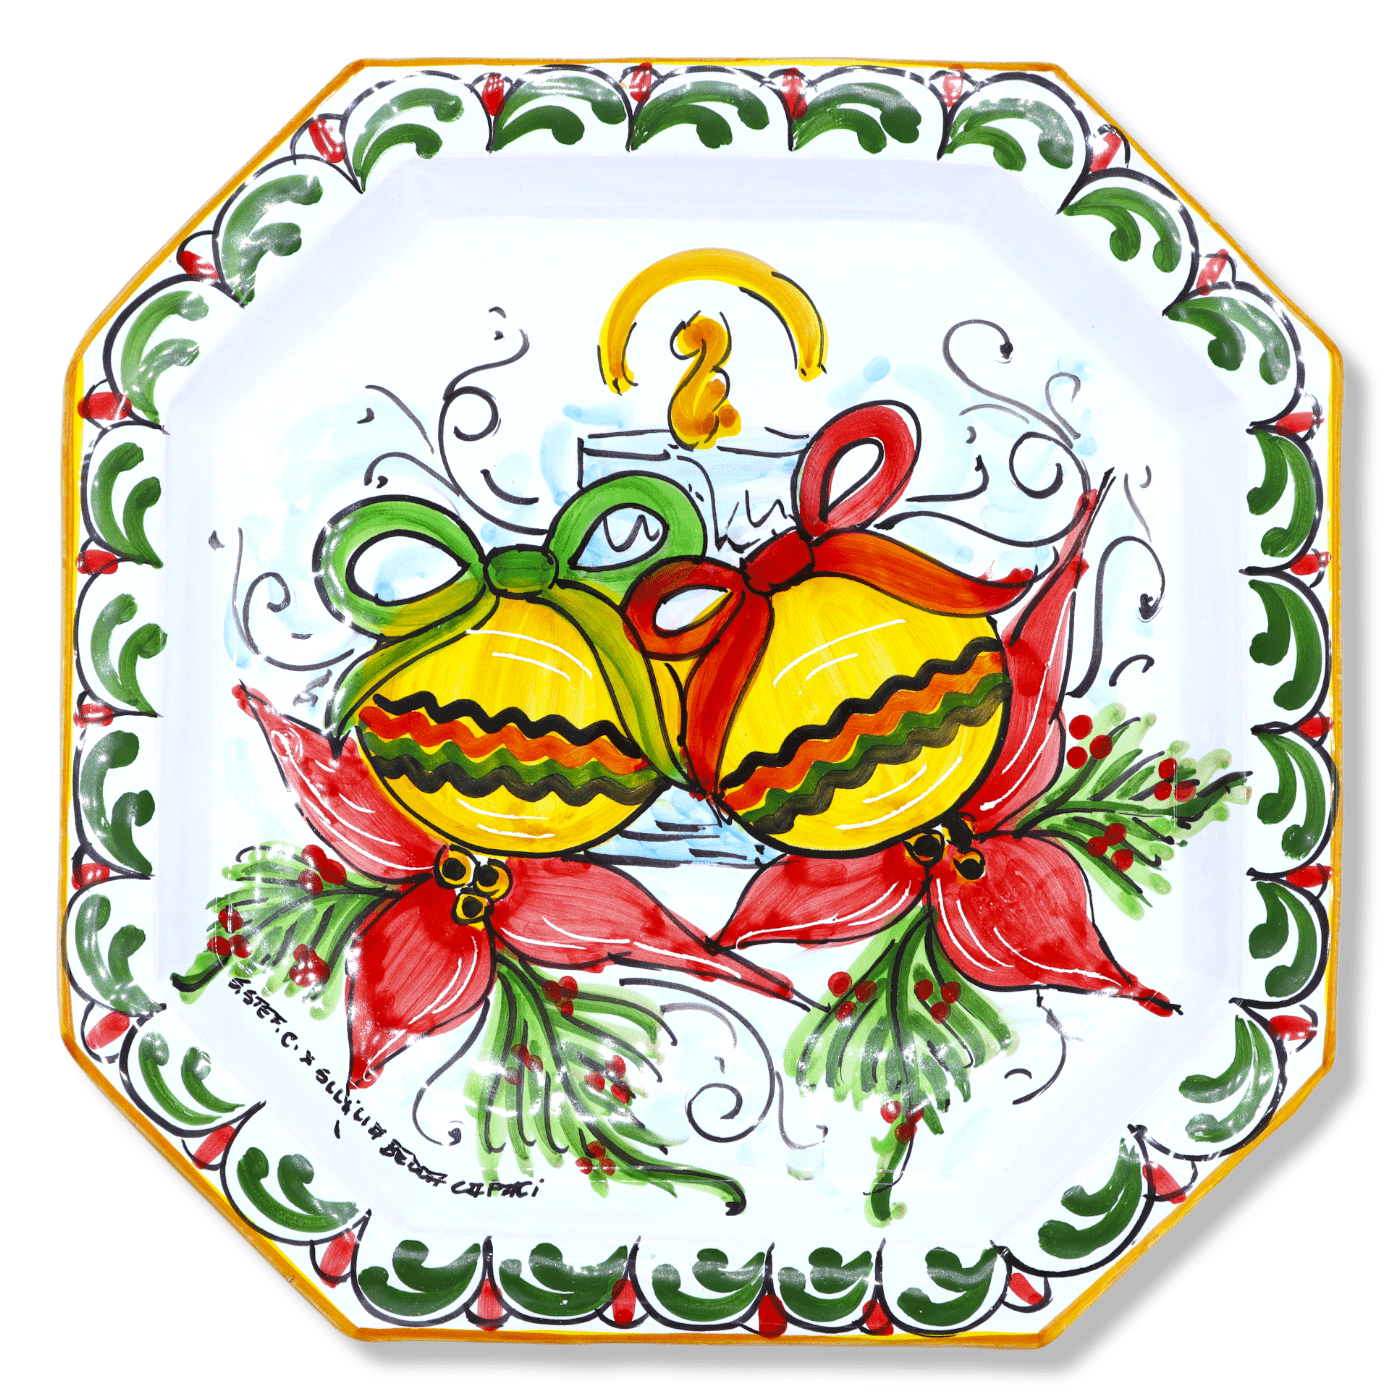 Digitaal bespotten Anoniem Siciliaanse keramische octagonale plaat, decoratie kaars en kerstballen,  30x30 cm approx. Modder